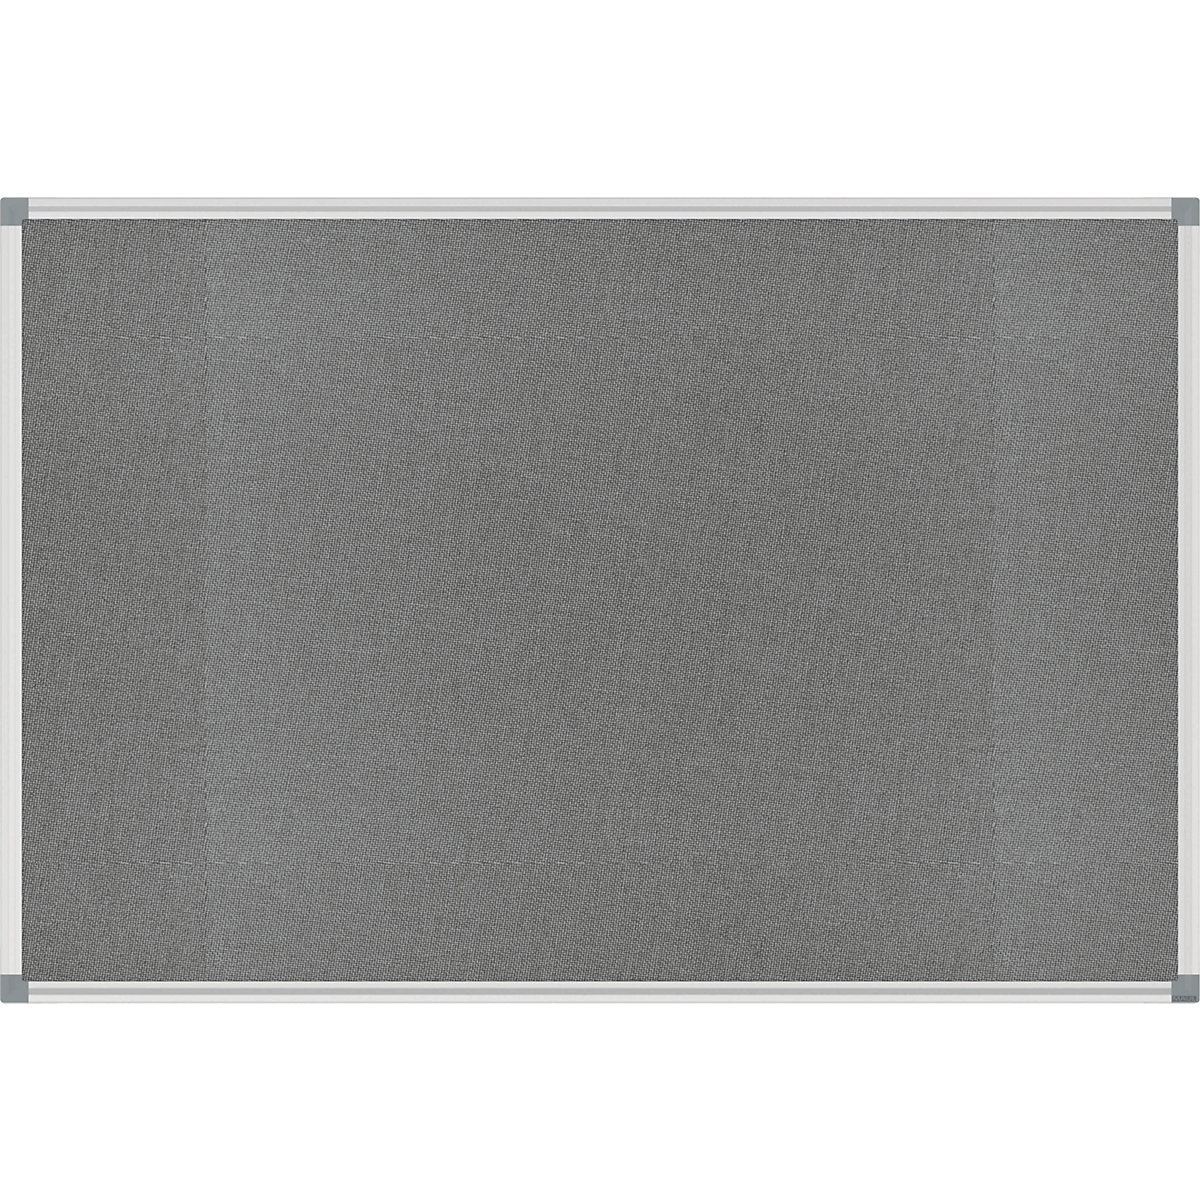 Tableau à épingler STANDARD – MAUL, habillage feutre, gris, l x h 900 x 600 mm-4